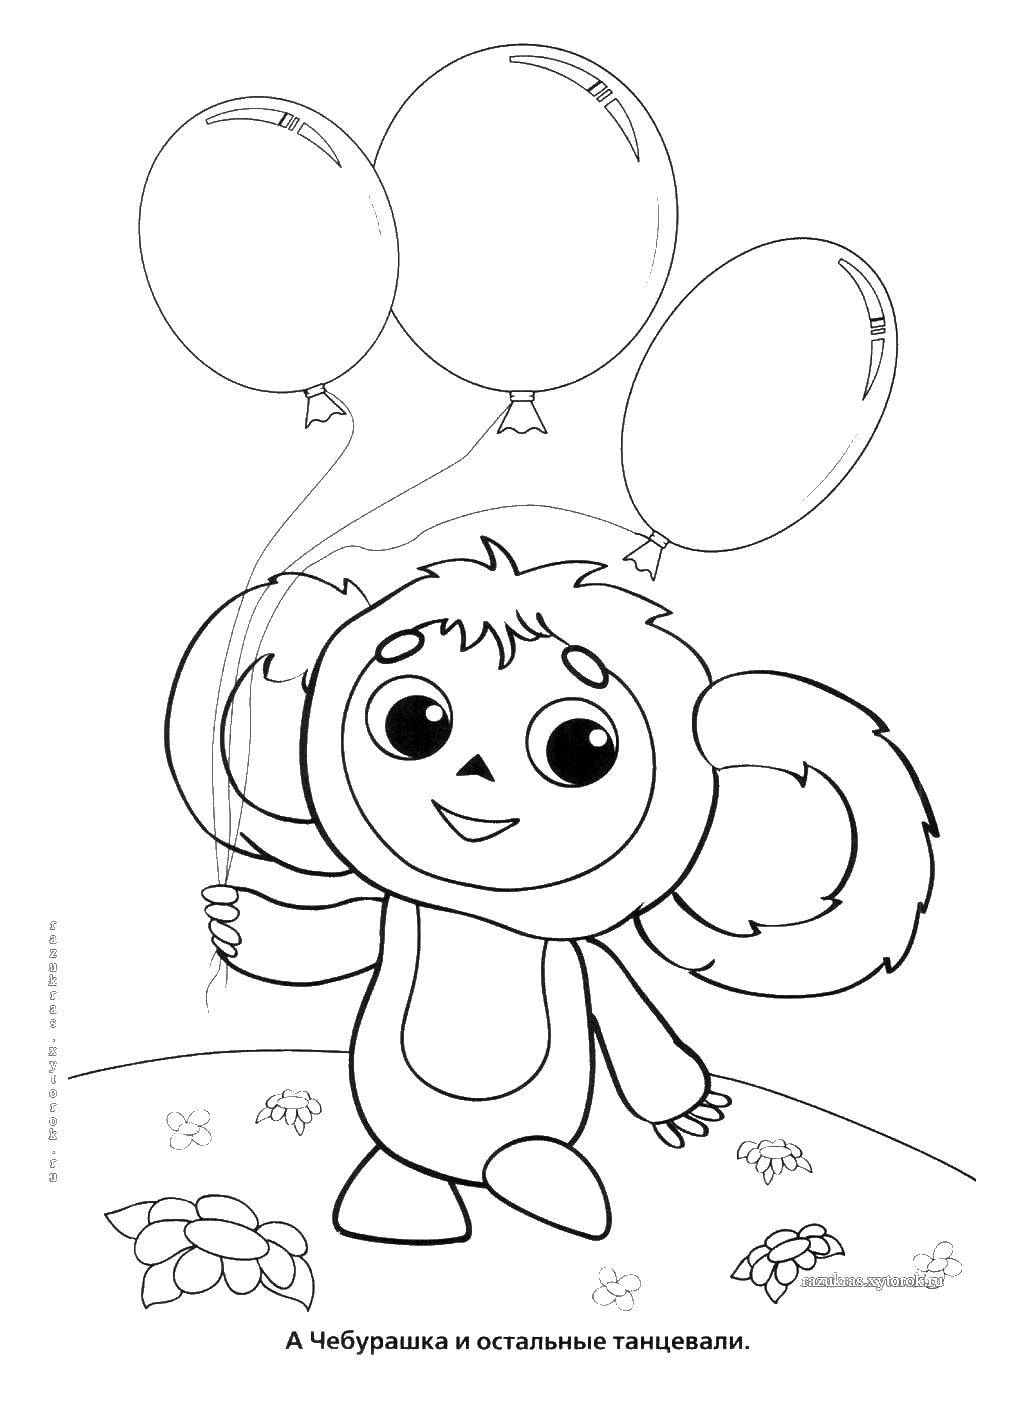 Coloring Cheburashka. Category Cartoon character. Tags:  Cartoon character, Cheburashka and Crocodile Gena.